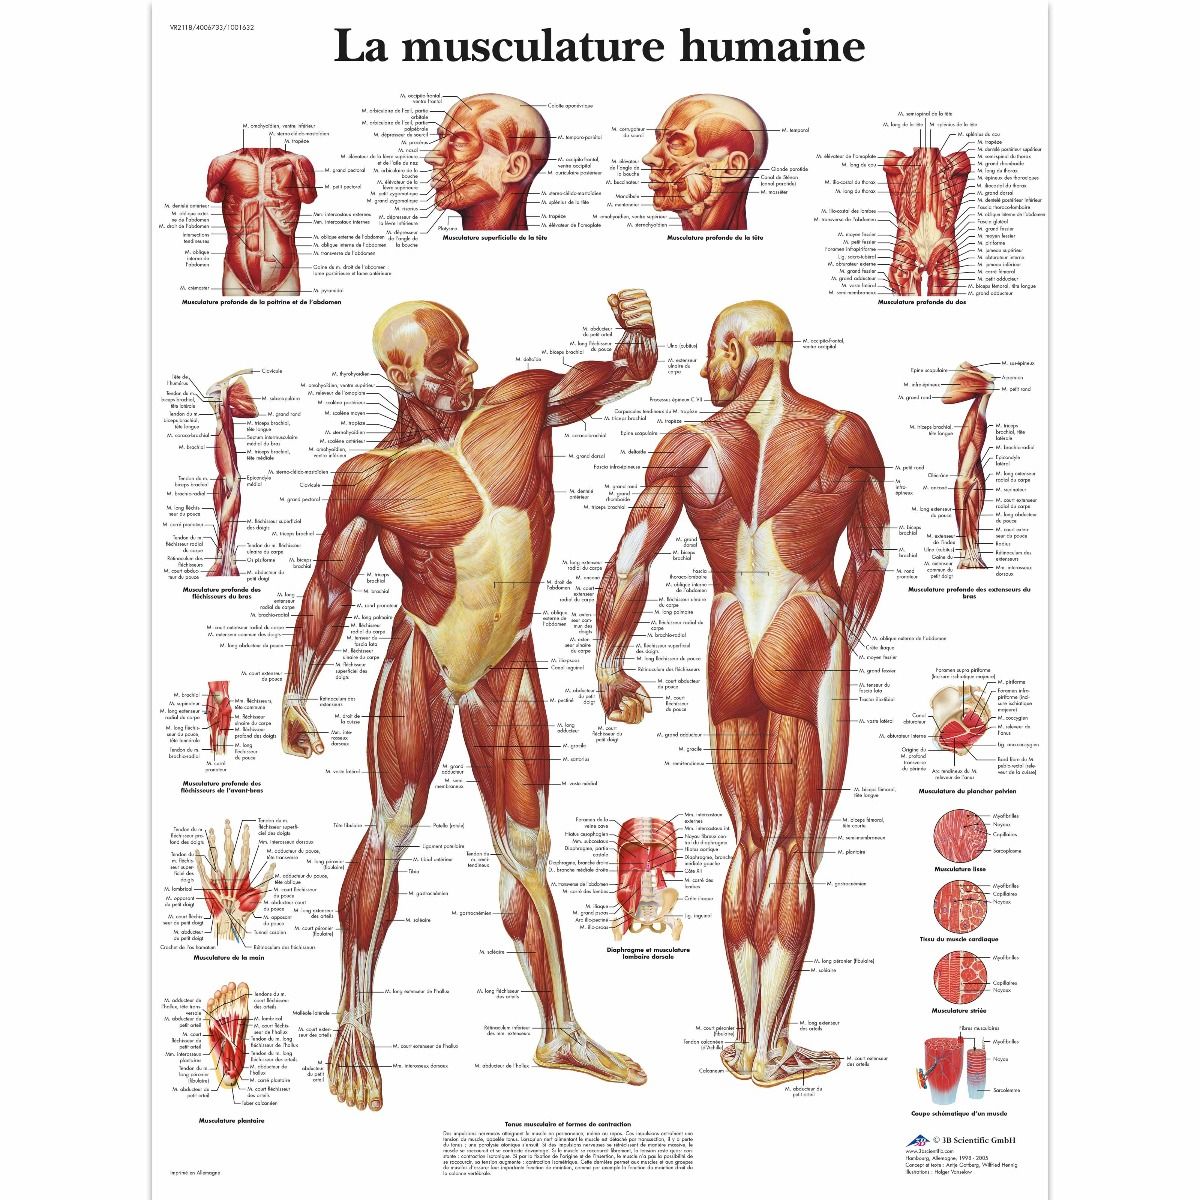 Modèle Anatomique De Corps Humain Dans Le Bureau Image stock